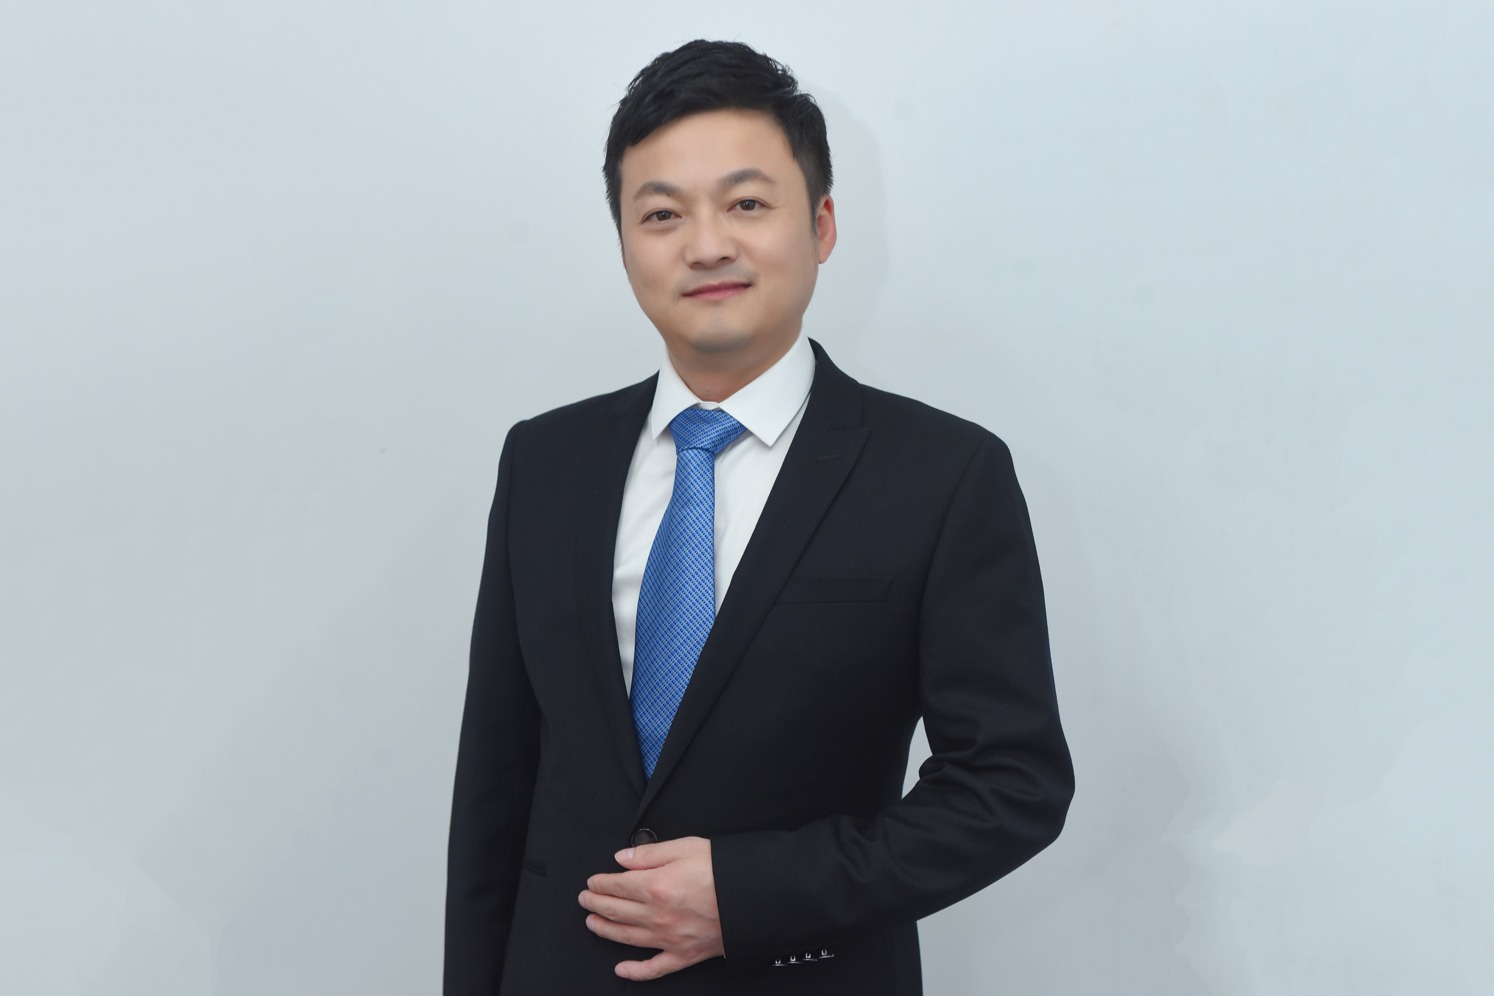 原捷途营销公司执行副总经理王磊 正式出任iCar生态营销公司总经理